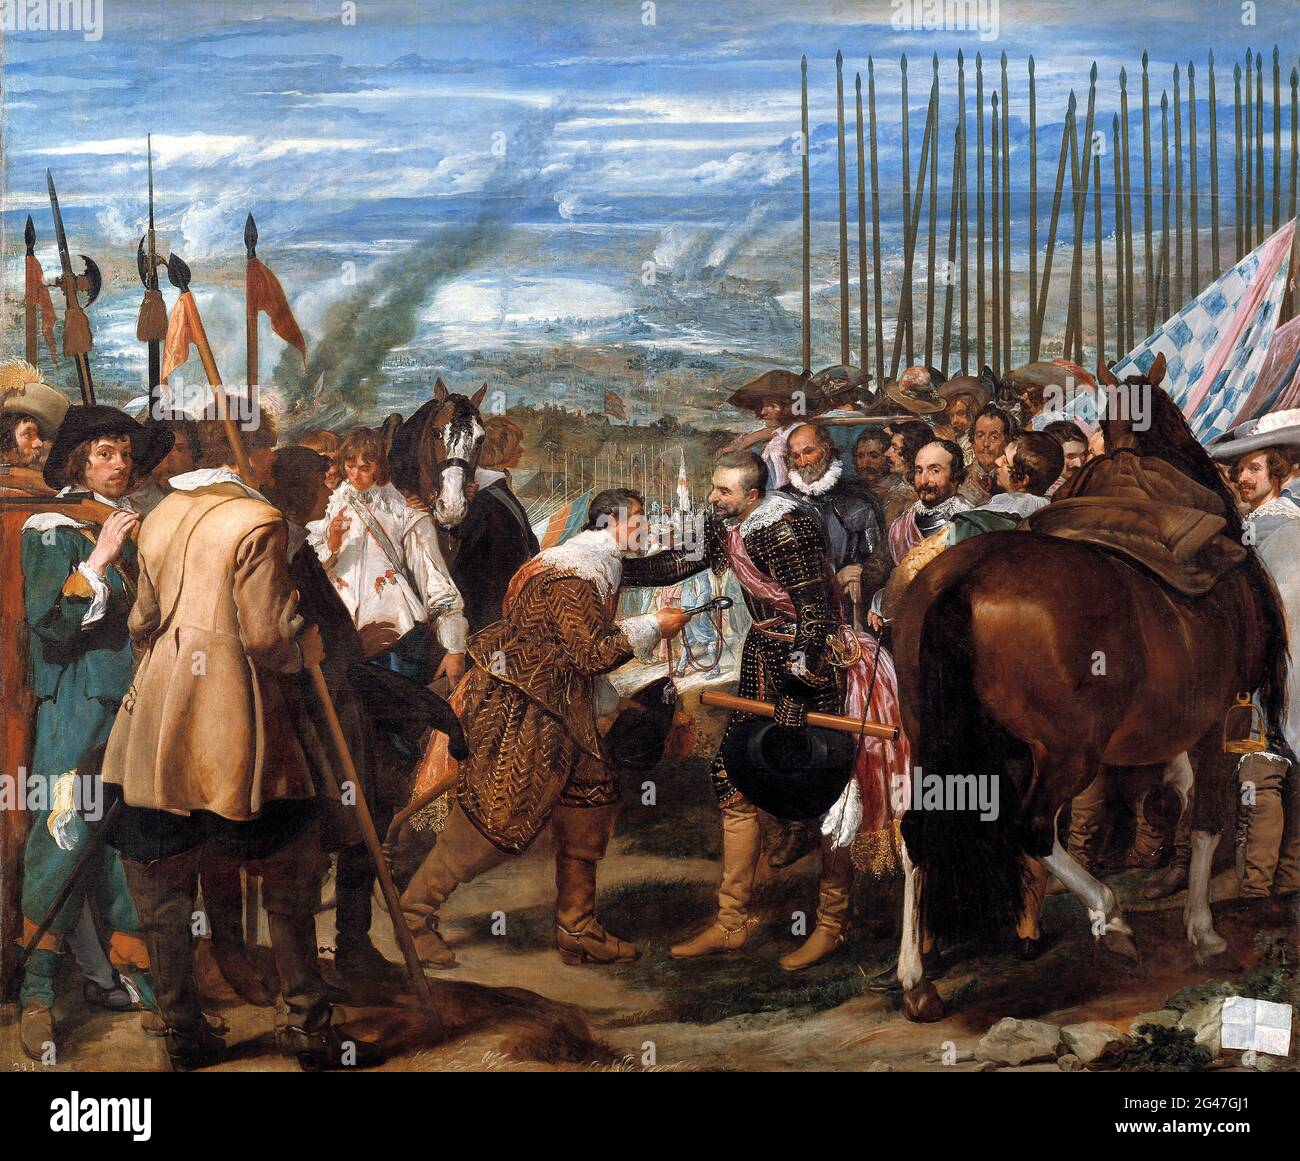 The Surrender of Breda (La rendición de Breda) by Diego Velazquez (1599-1660), oil on canvas, c.1635 Stock Photo